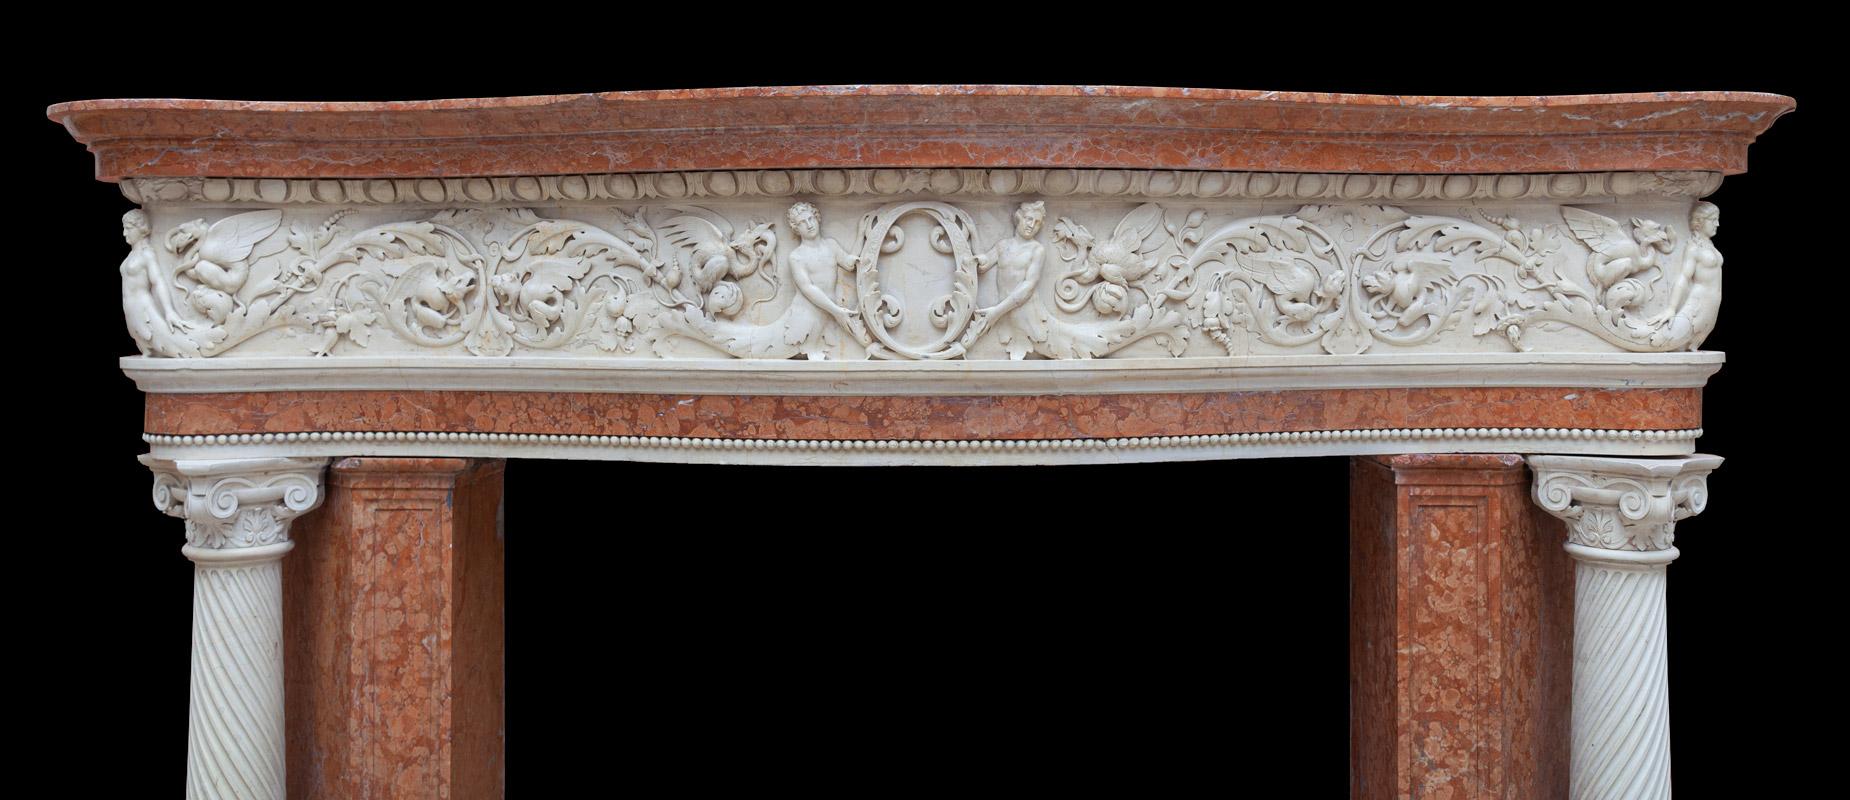 Renaissance Revival Antique Venetian Renaissance Marble Mantel For Sale